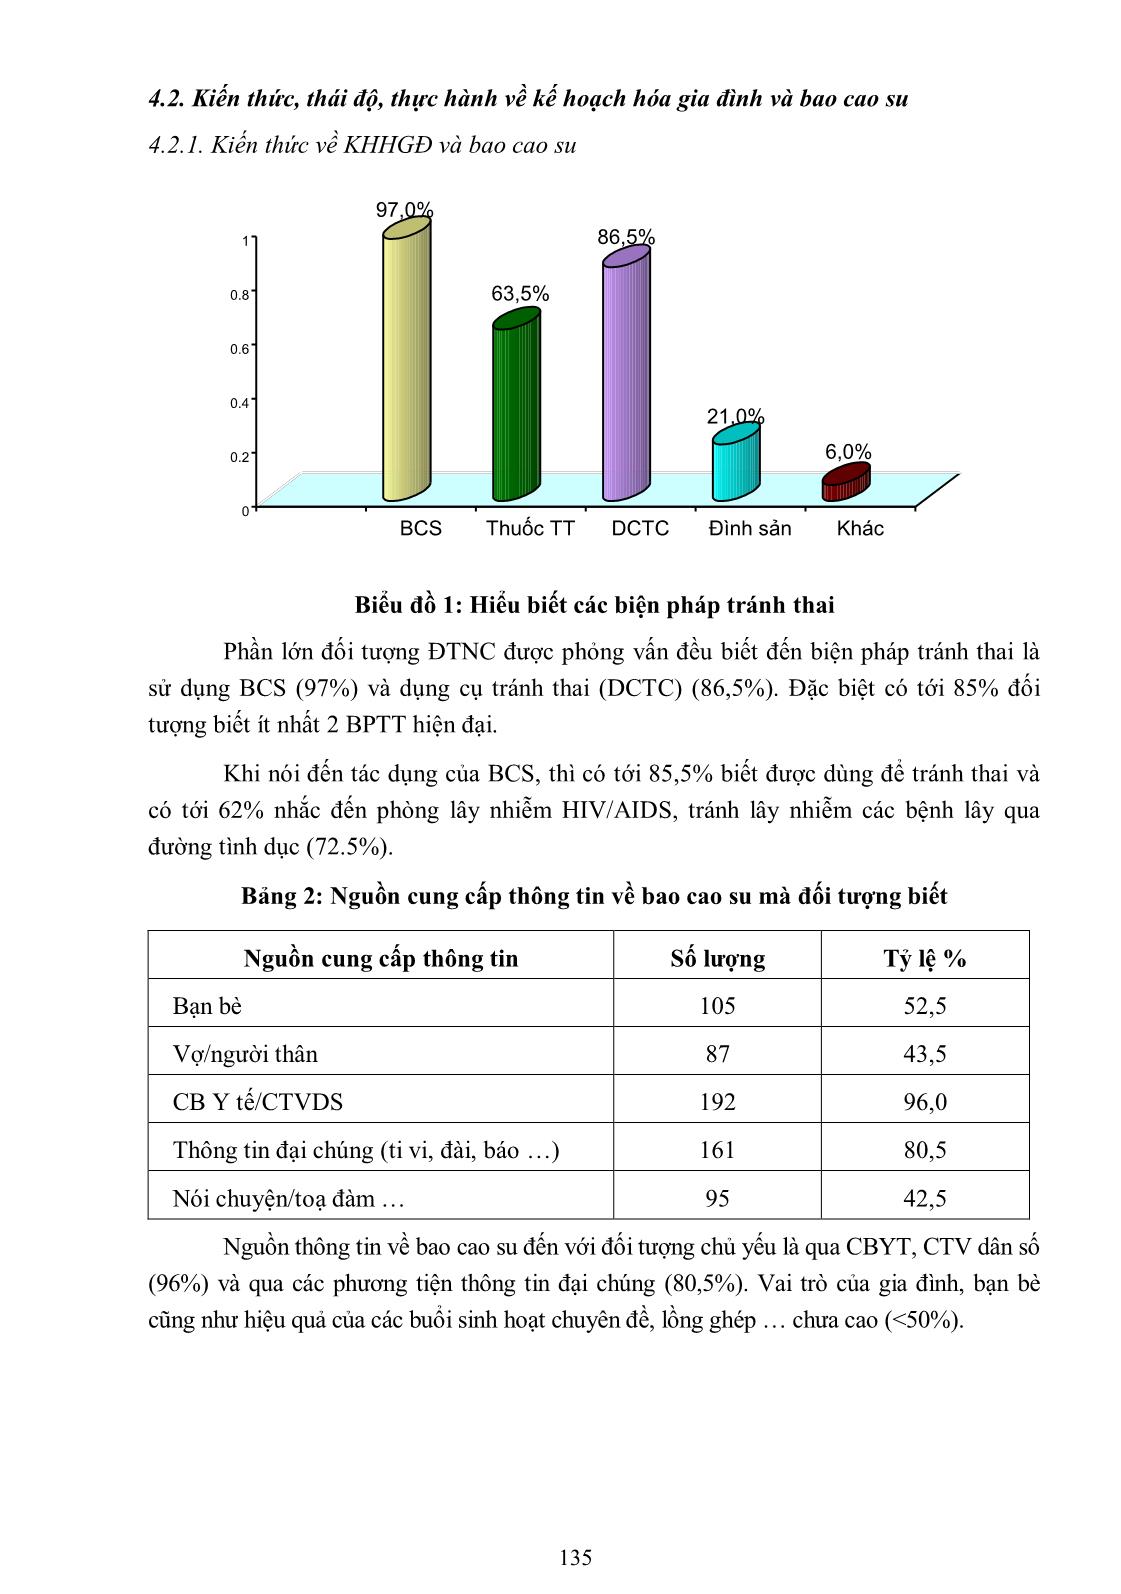 Mô tả kiến thức, thái độ và thực hành sử dụng bao cao su trong kế hoạch hóa gia đình của nam giới có vợ tại xã Thượng Kiệm, huyện Kim Sơn, tỉnh Ninh Bình năm 2013 trang 5